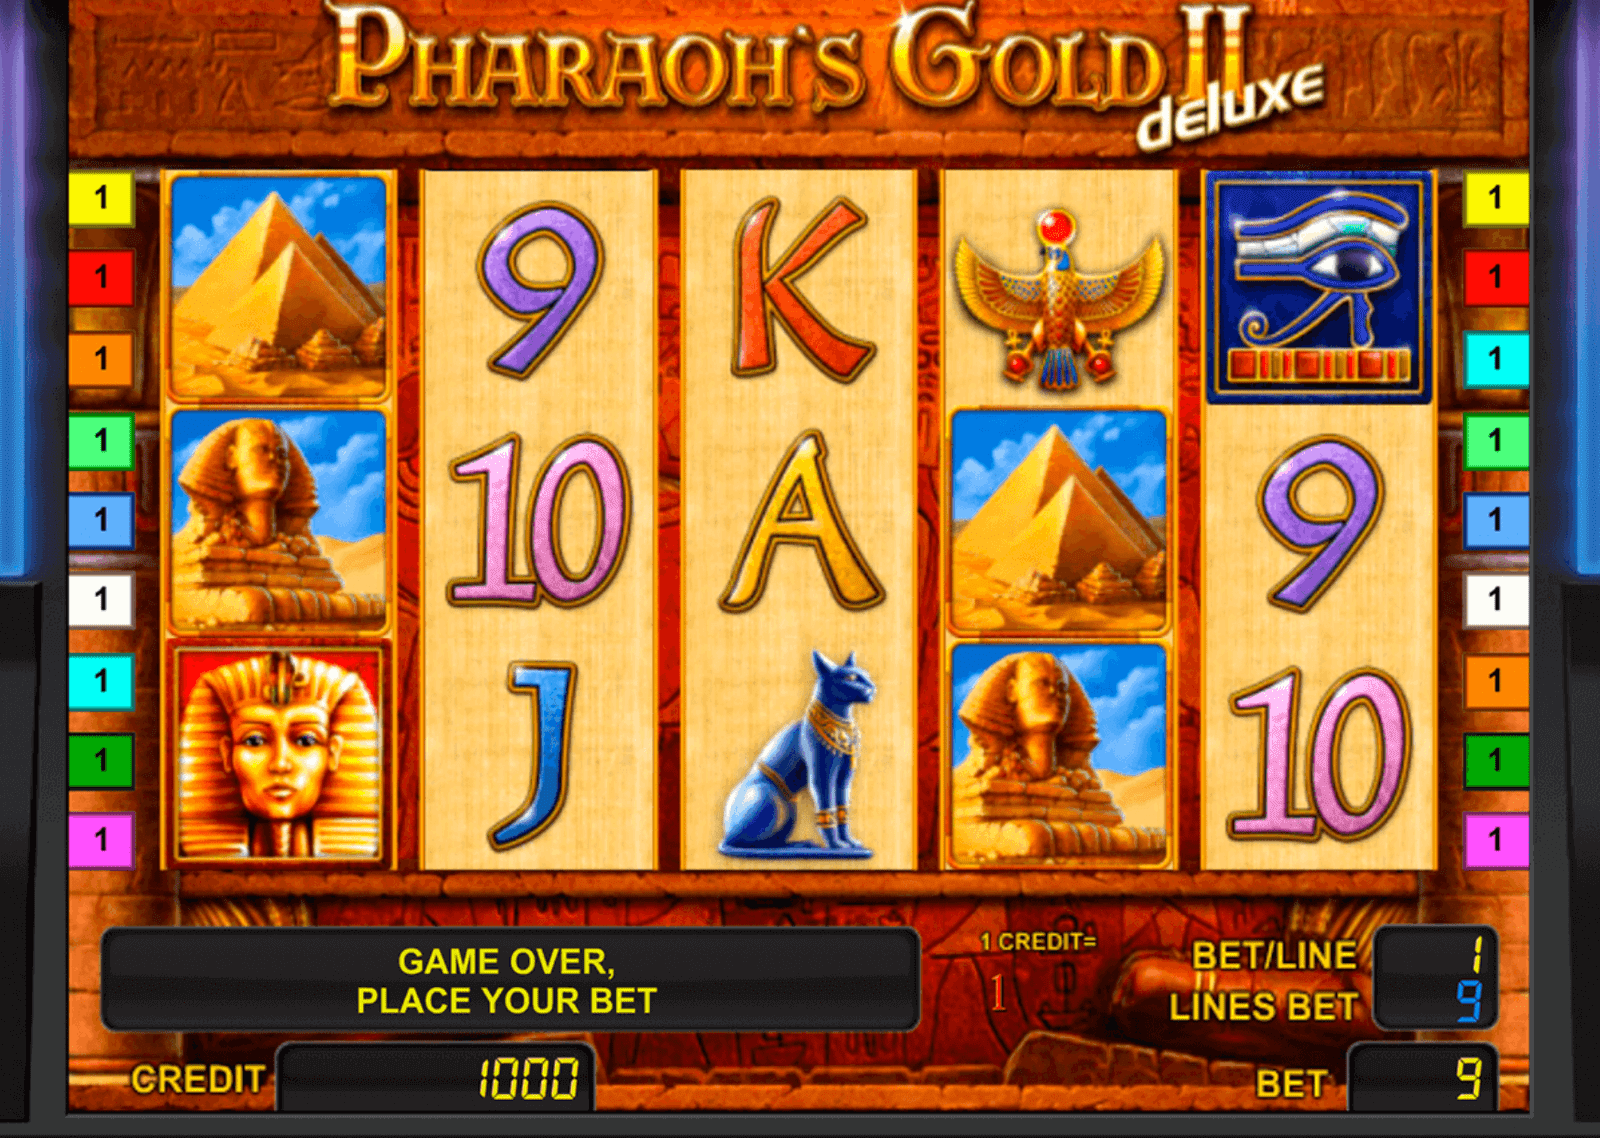 Jugar gratis a la tragamonedas Pharaohs Gold 20 Deluxe de Novomatic